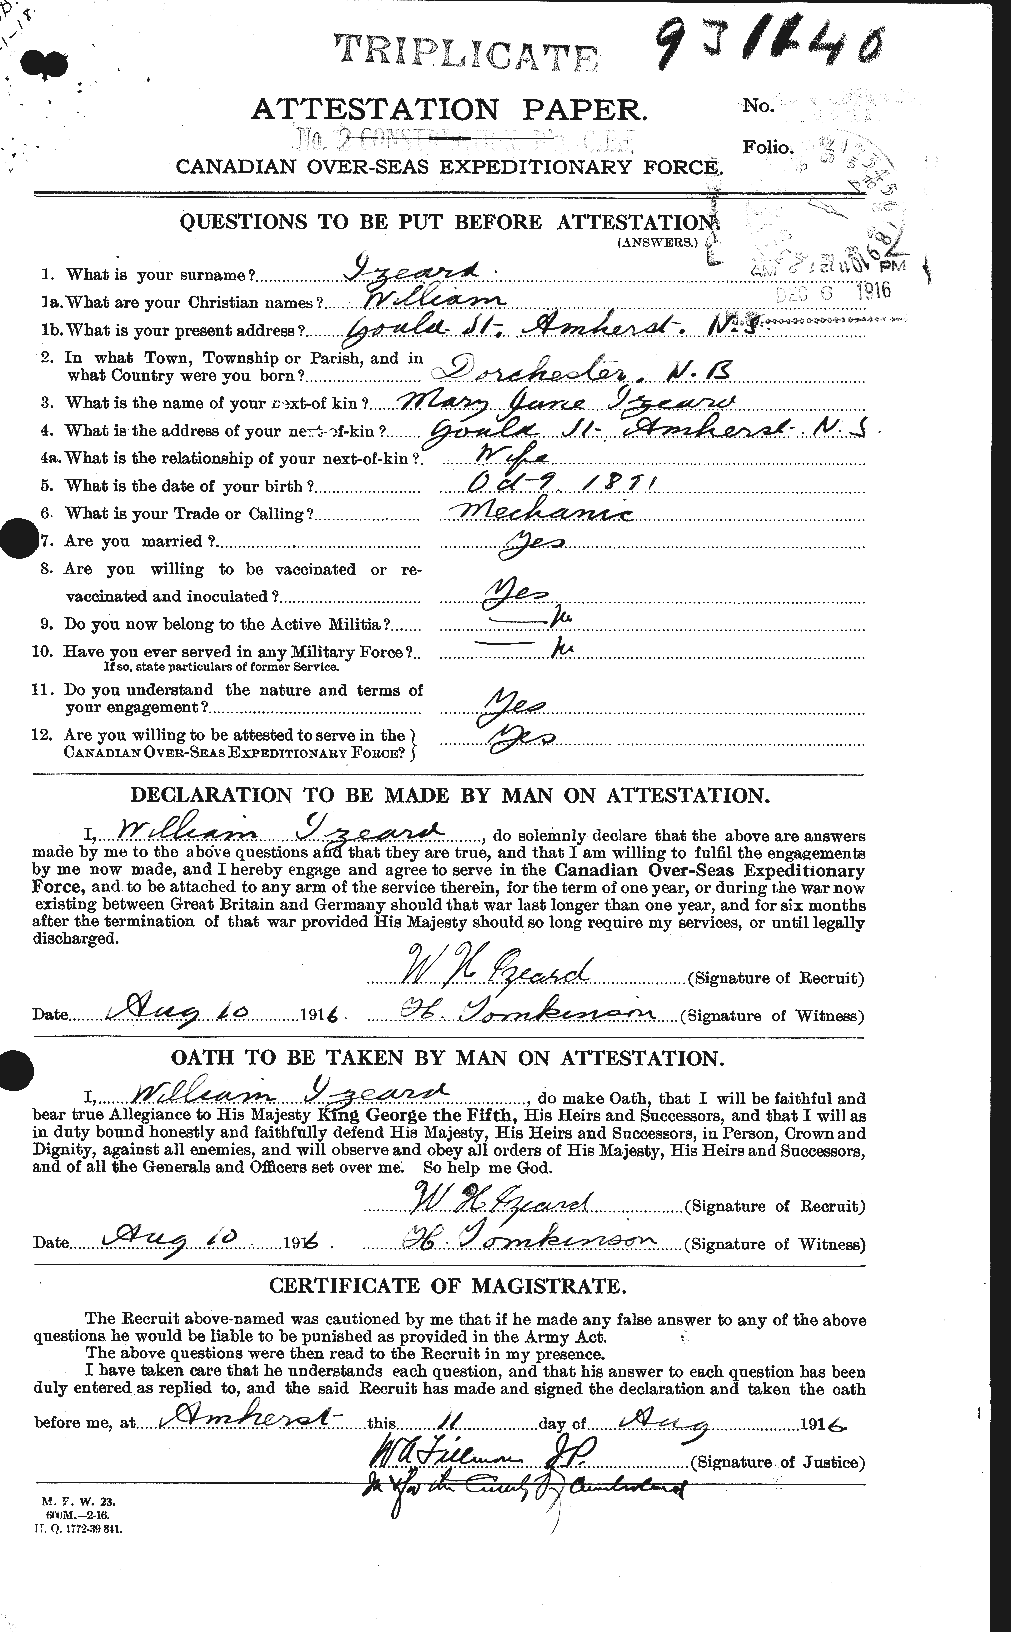 Dossiers du Personnel de la Première Guerre mondiale - CEC 416441a